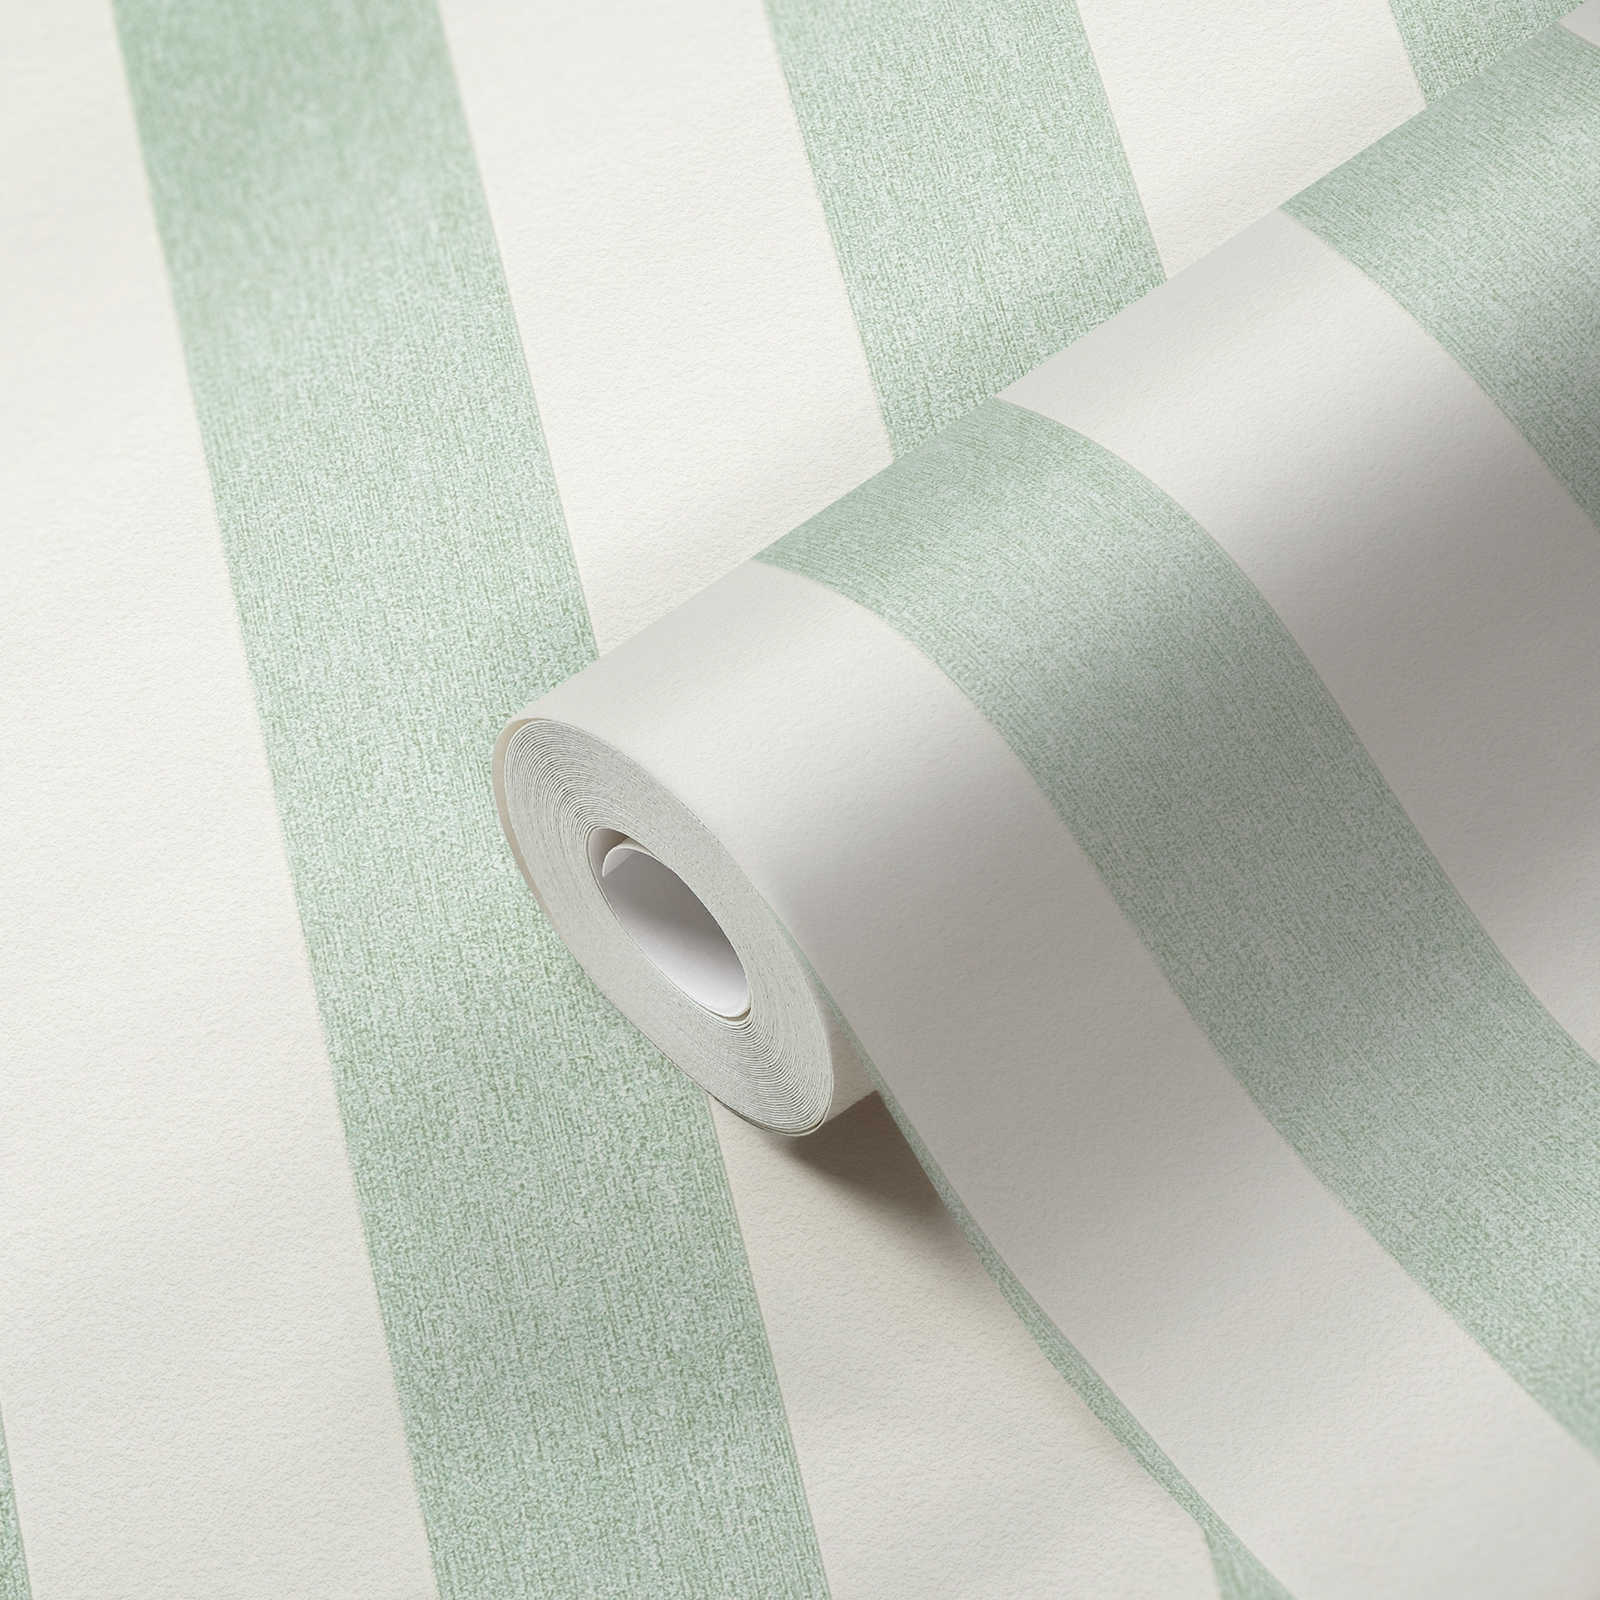             Papel pintado no tejido con rayas de aspecto texturizado y mate - verde, blanco
        